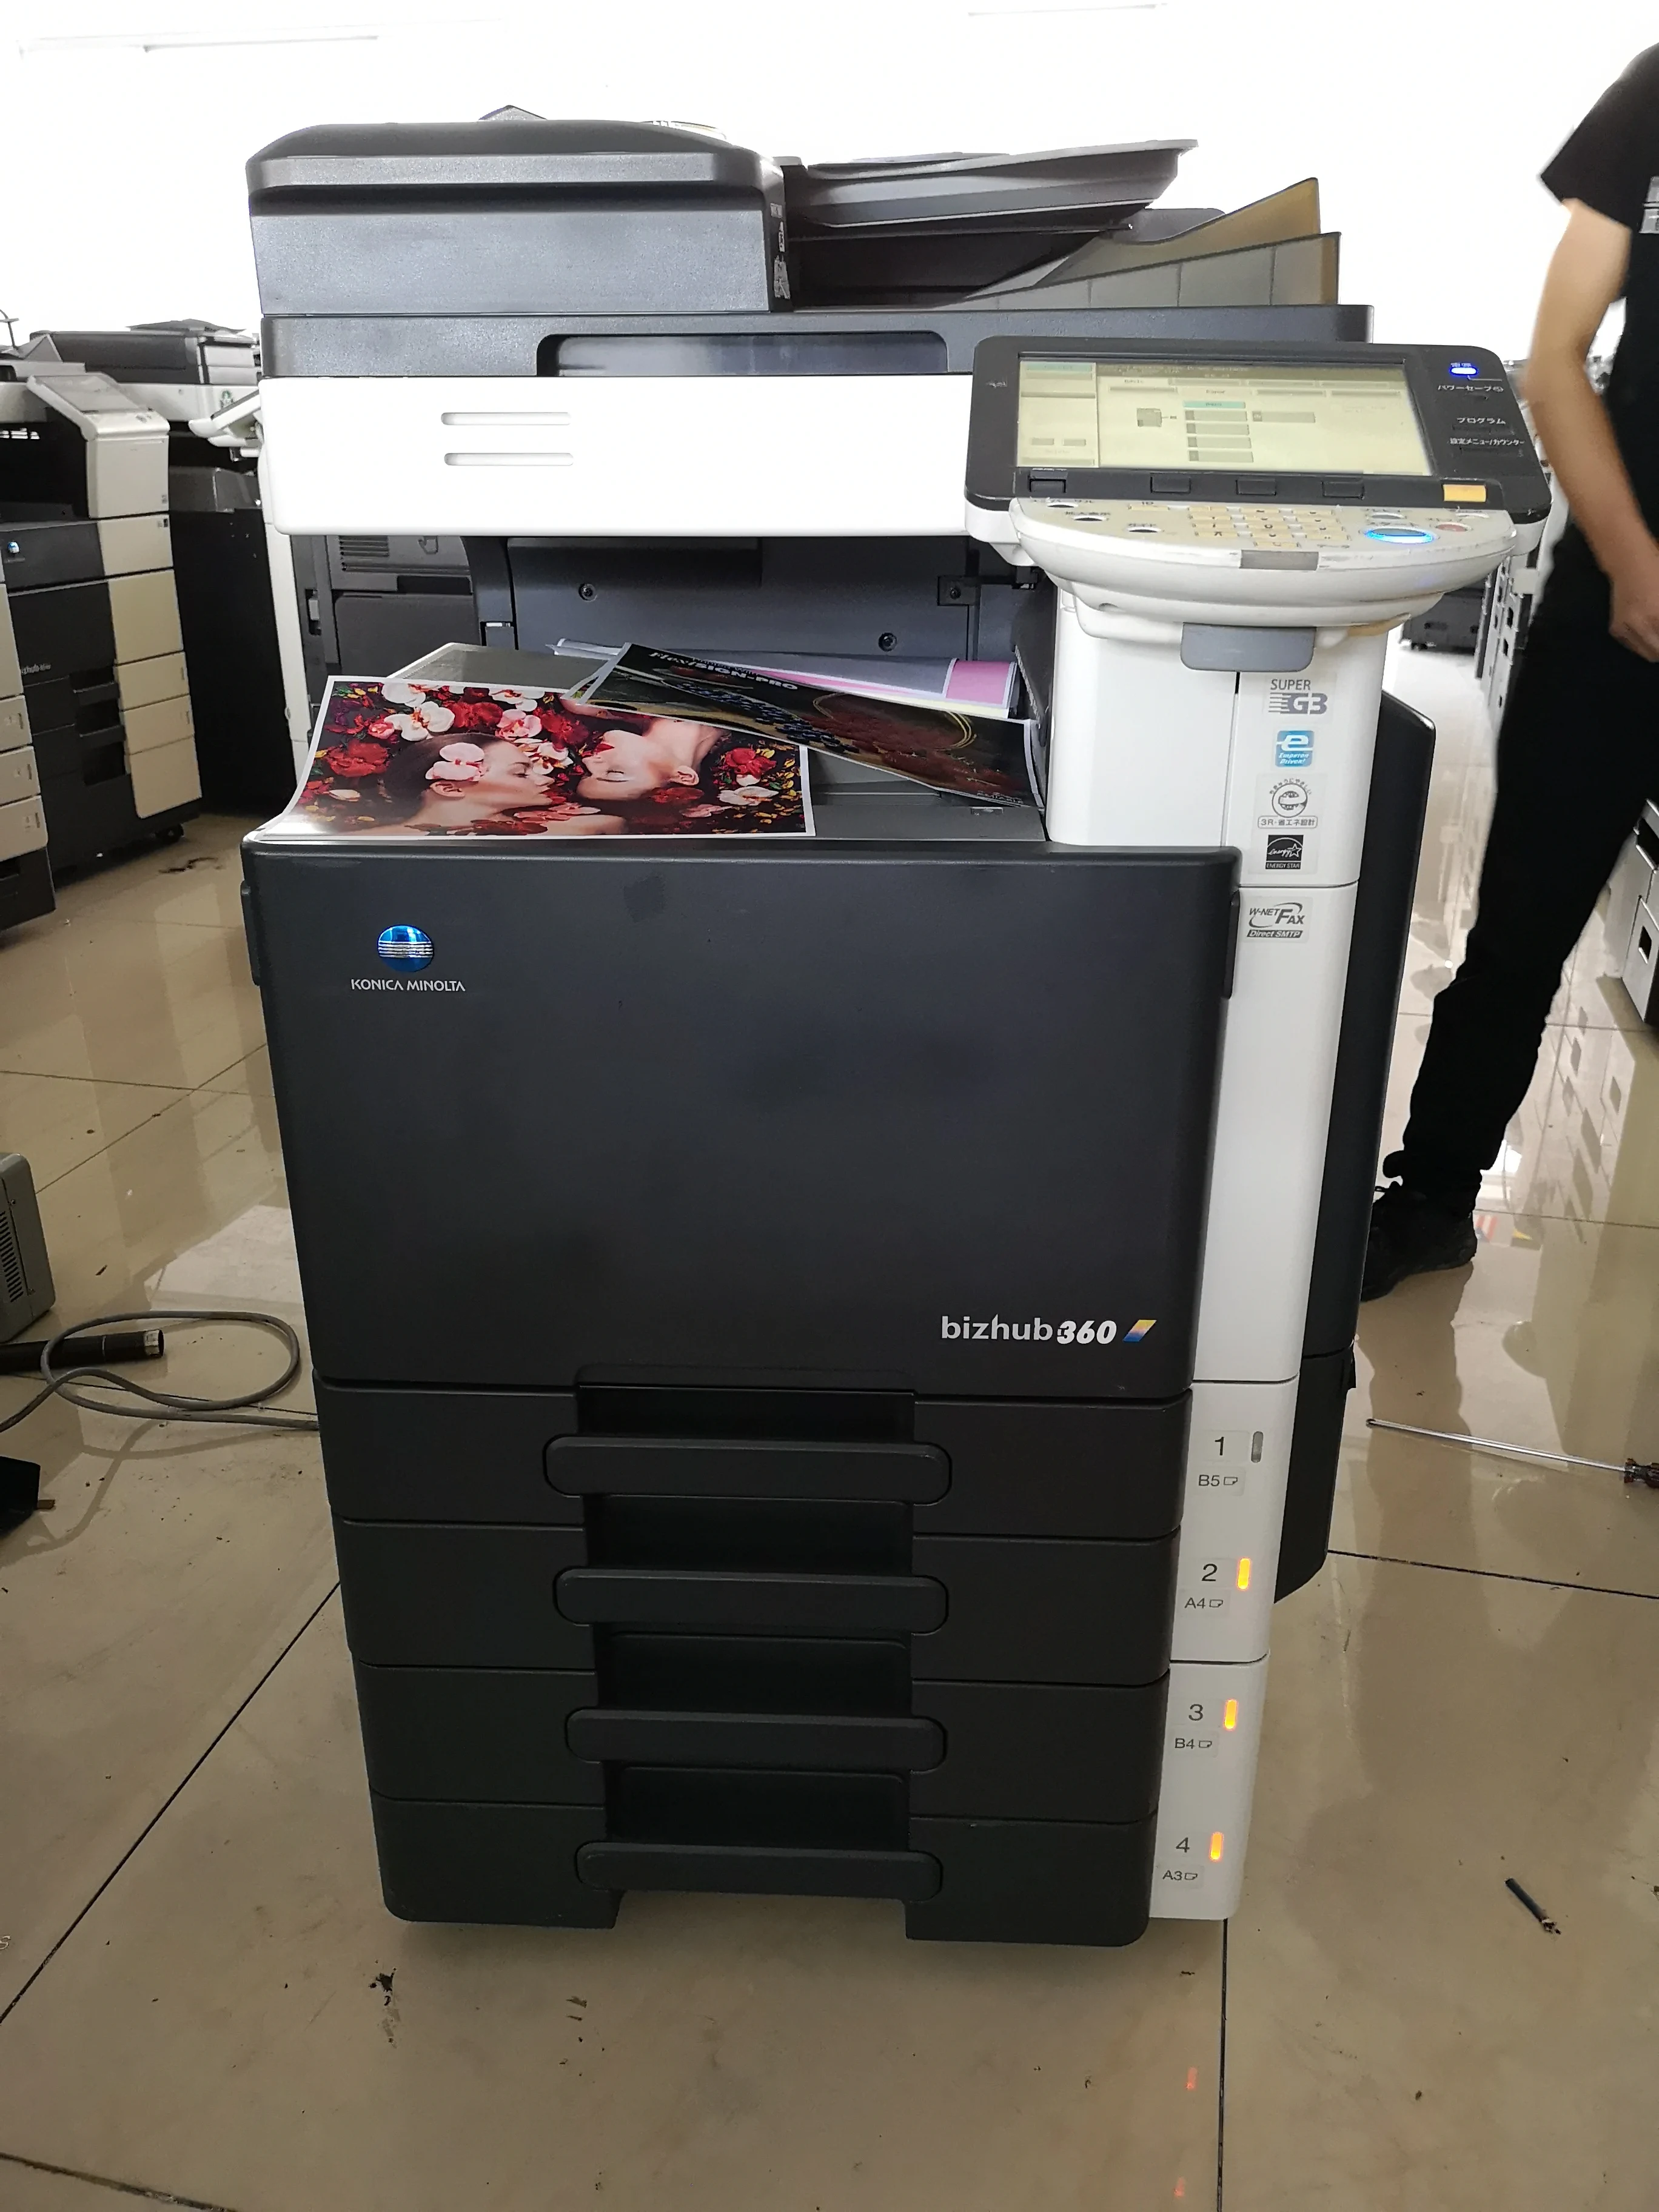 
working used printer photocopier machine for Konica Minolta Bizhub C220 C280 C360 